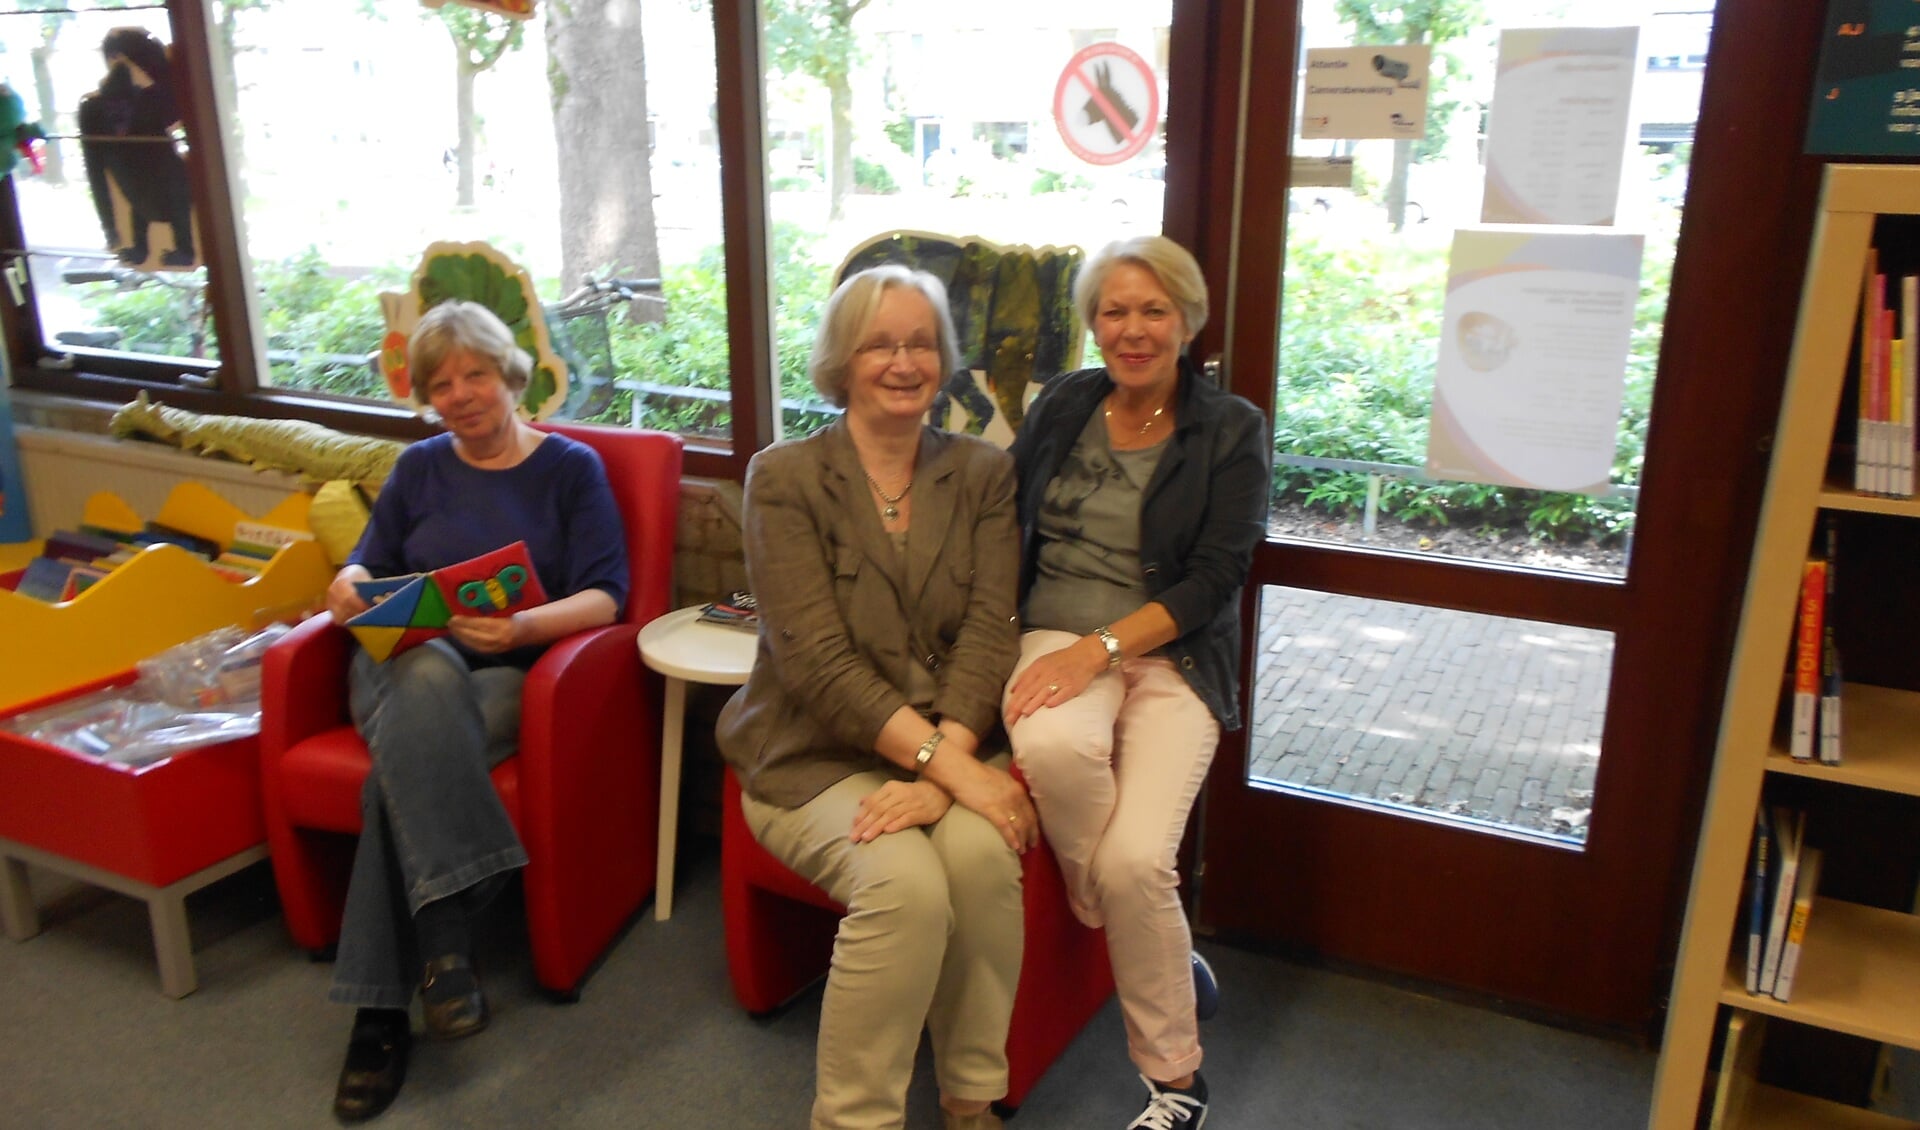 De jubilarissen in de jeugdhoek van de bibliotheek. V.l.n.r.: Hanneke Claessens, Tiny Jansen en Riny Merkus.